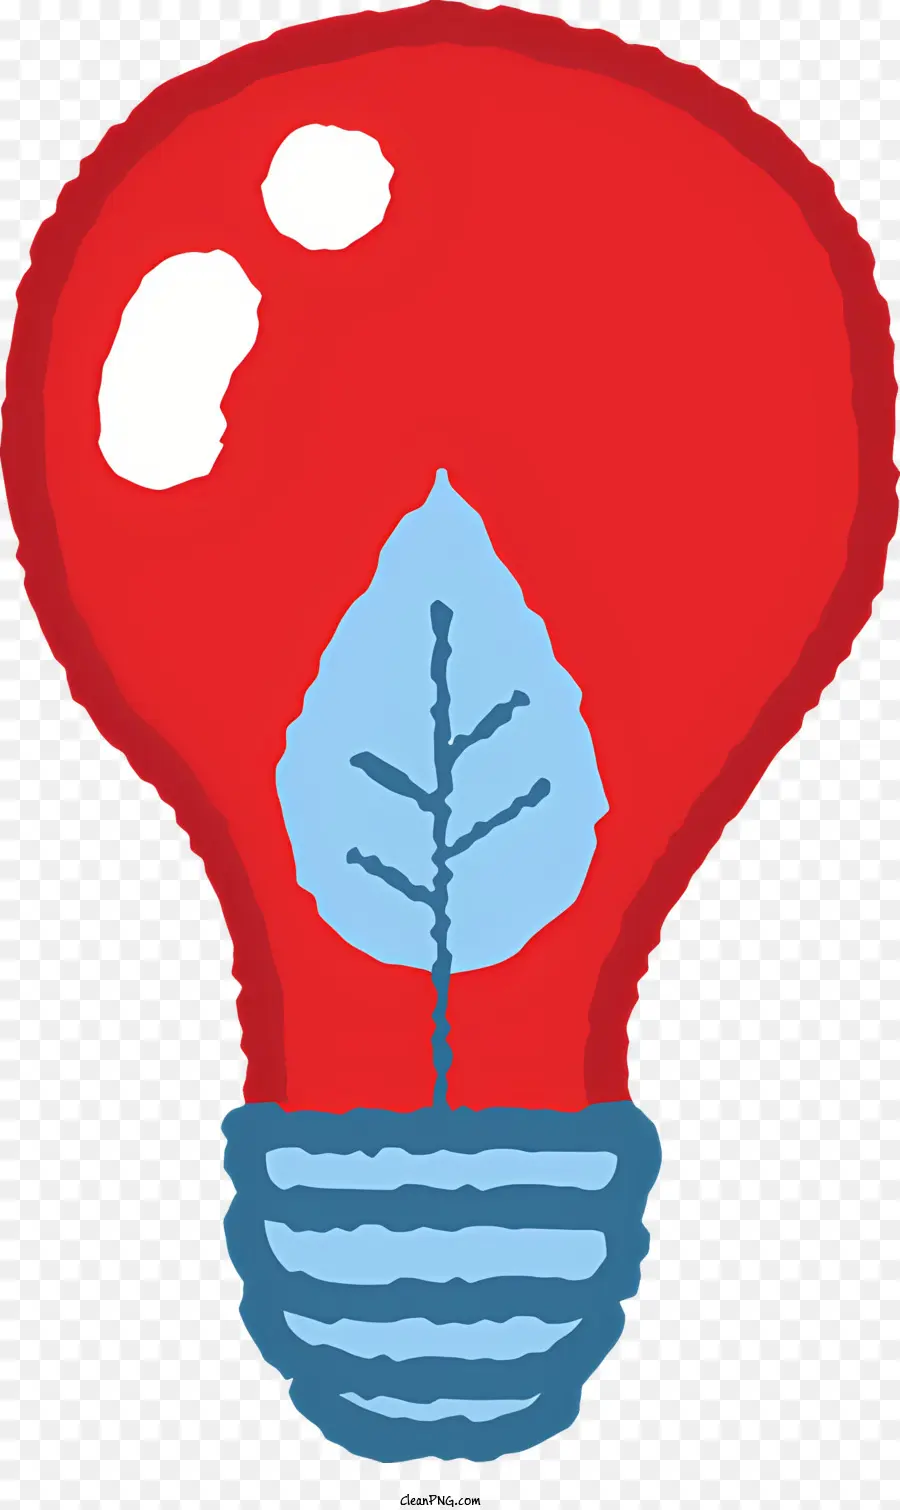 Kleinbaum - Mit Wasser und Baum gefüllte rote Glühbirne symbolisiert Wachstum und Entwicklung